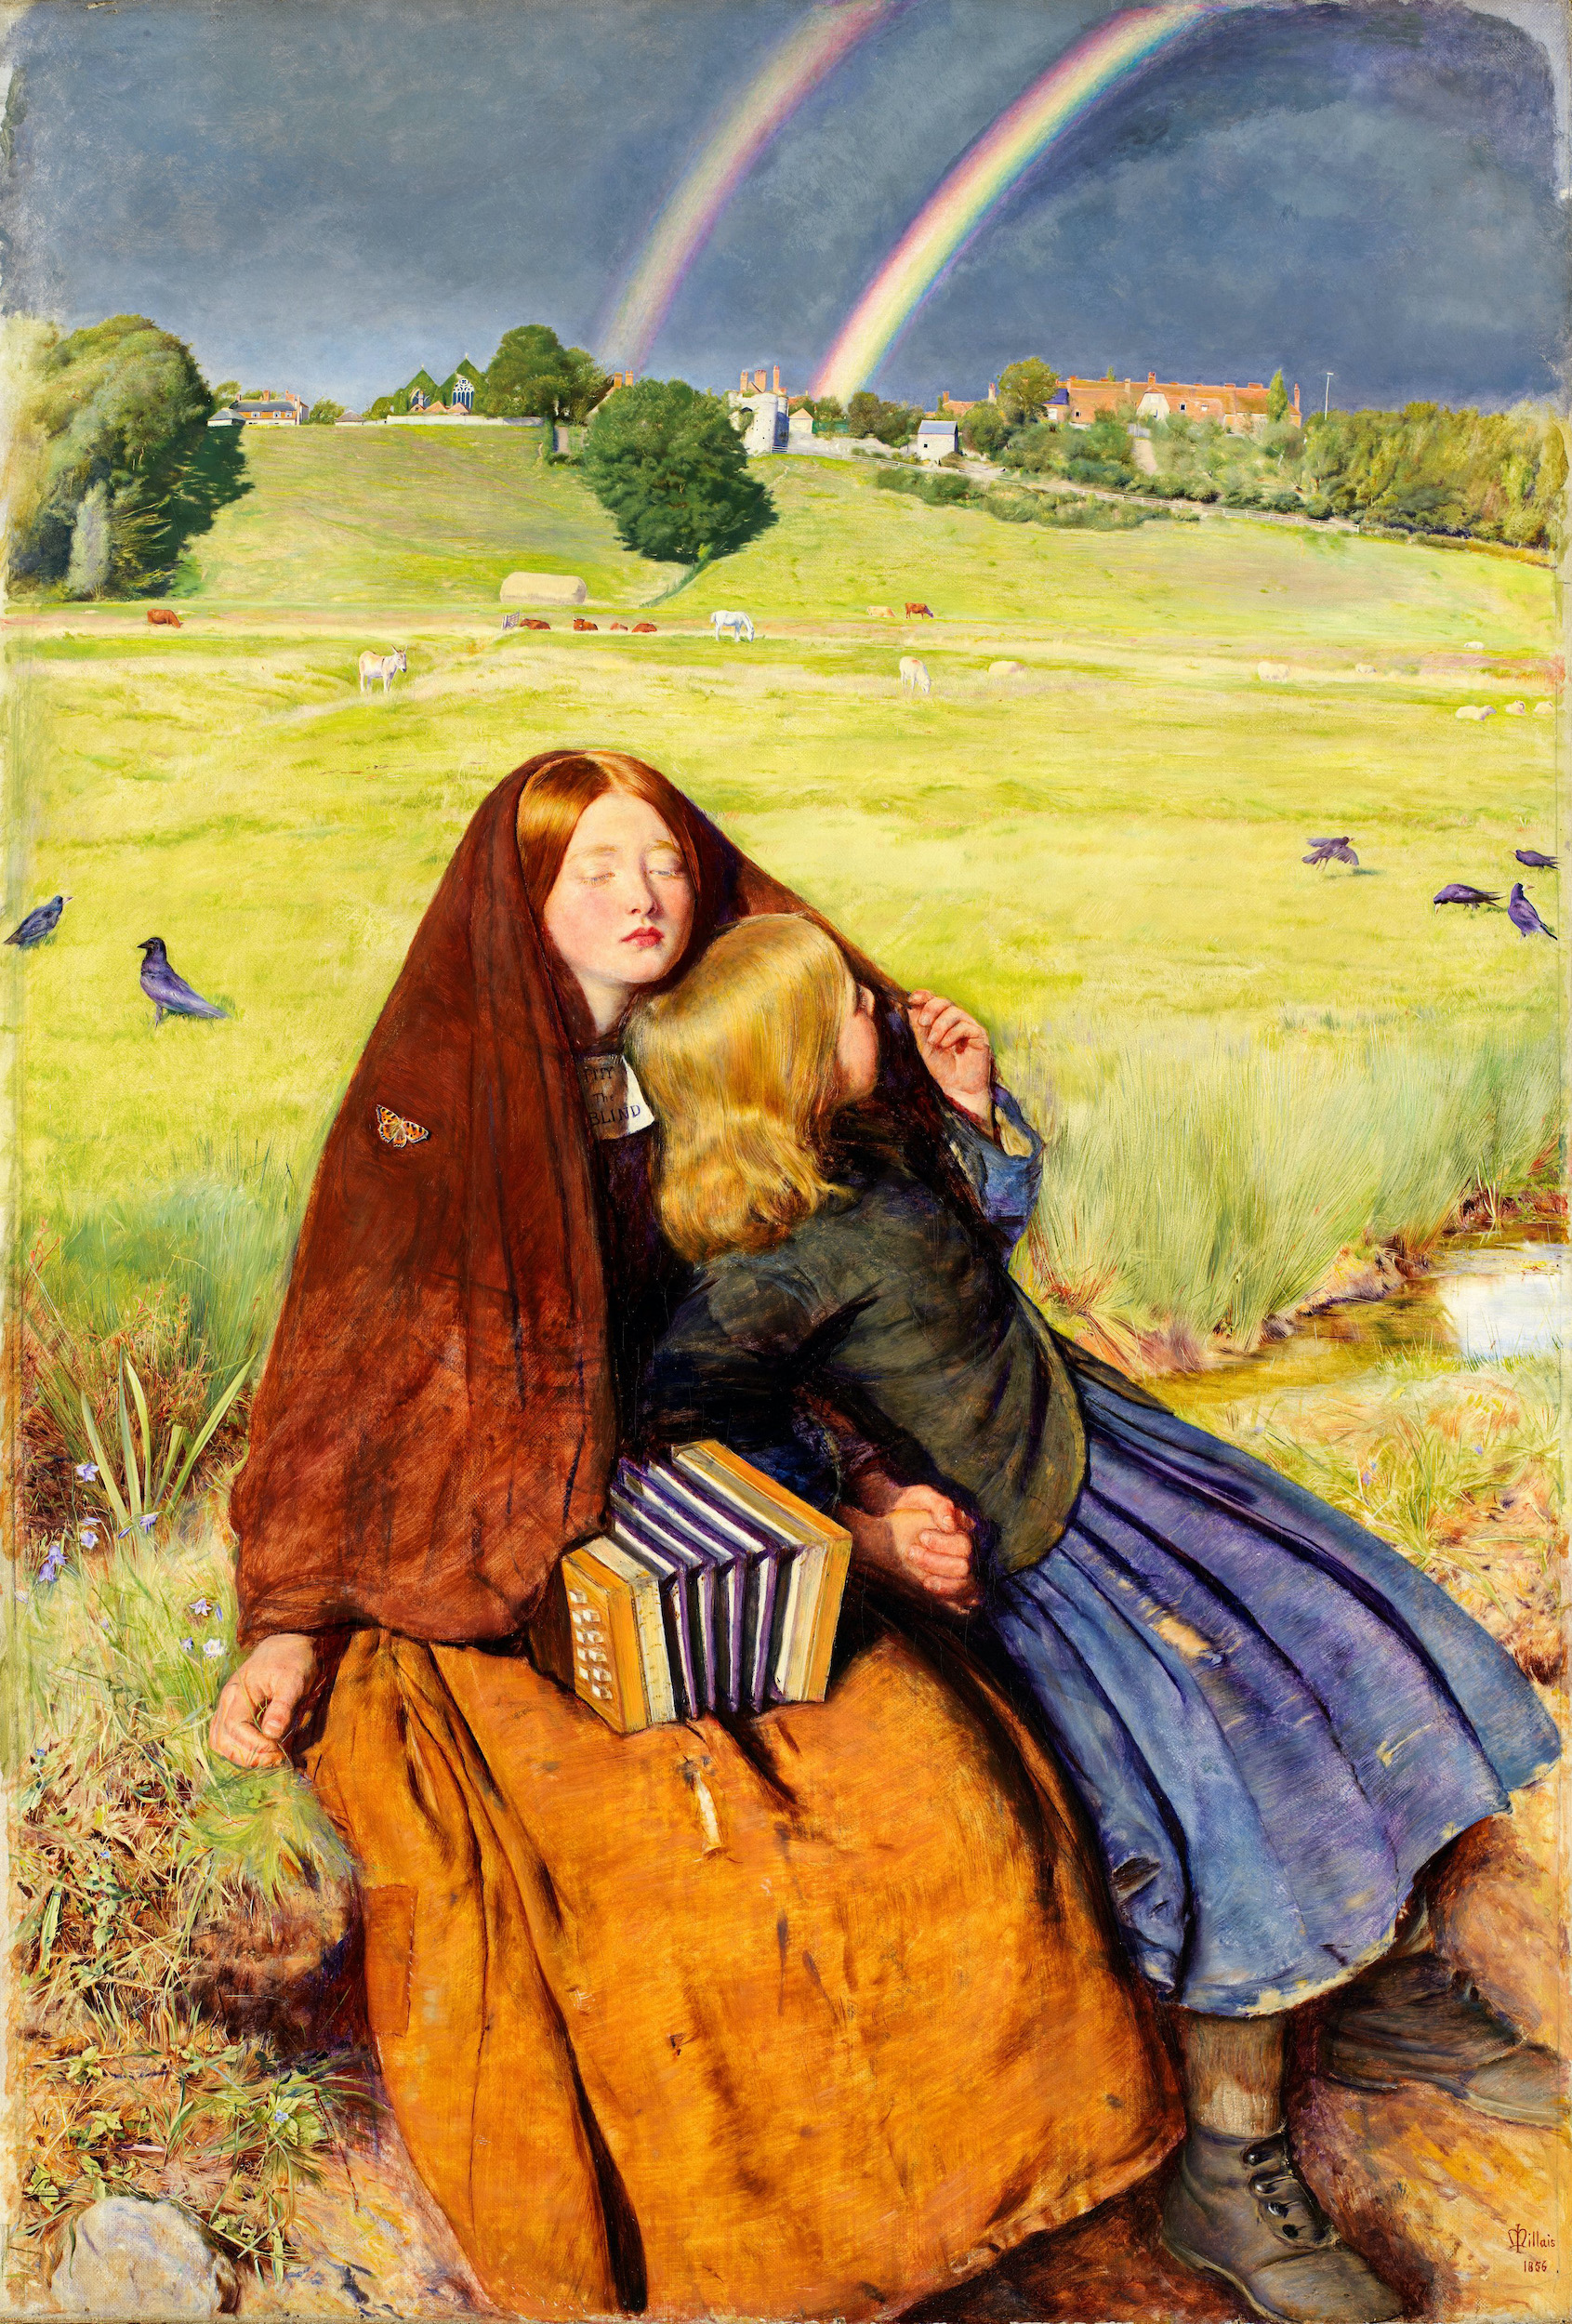 Das blinde Mädchen by John Everett Millais - 1856 - 62,2 x 82,6 cm Birmingham Museum and Art Gallery